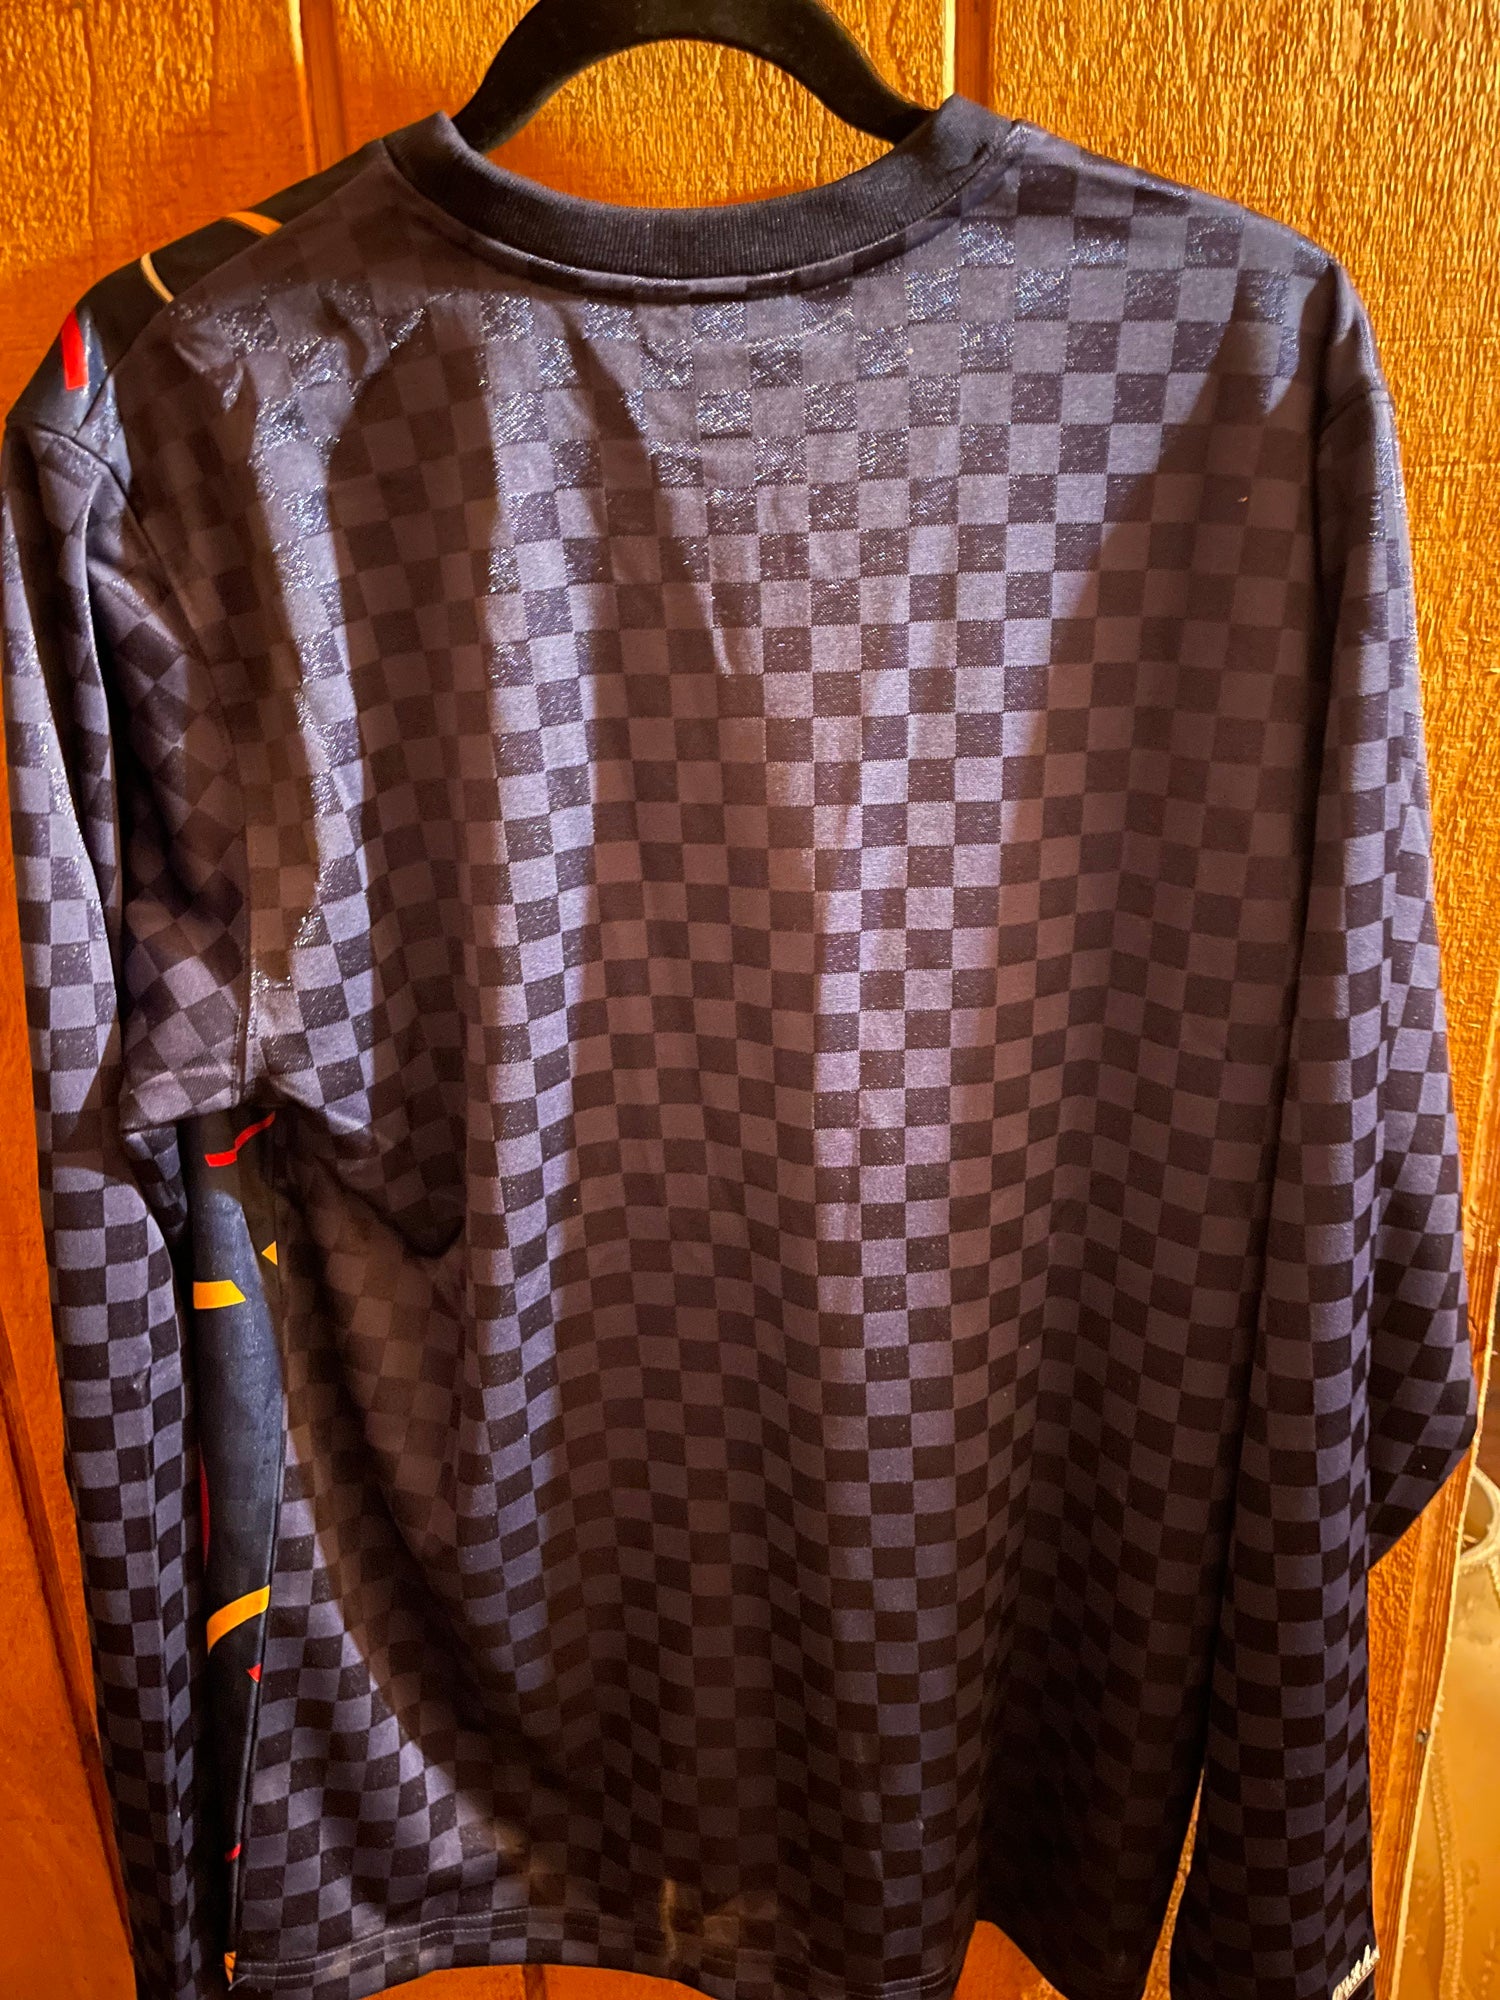 Louis Vuitton, Shirts, Louis Vuitton Black And Orange Football Jersey  Monogram Shirt